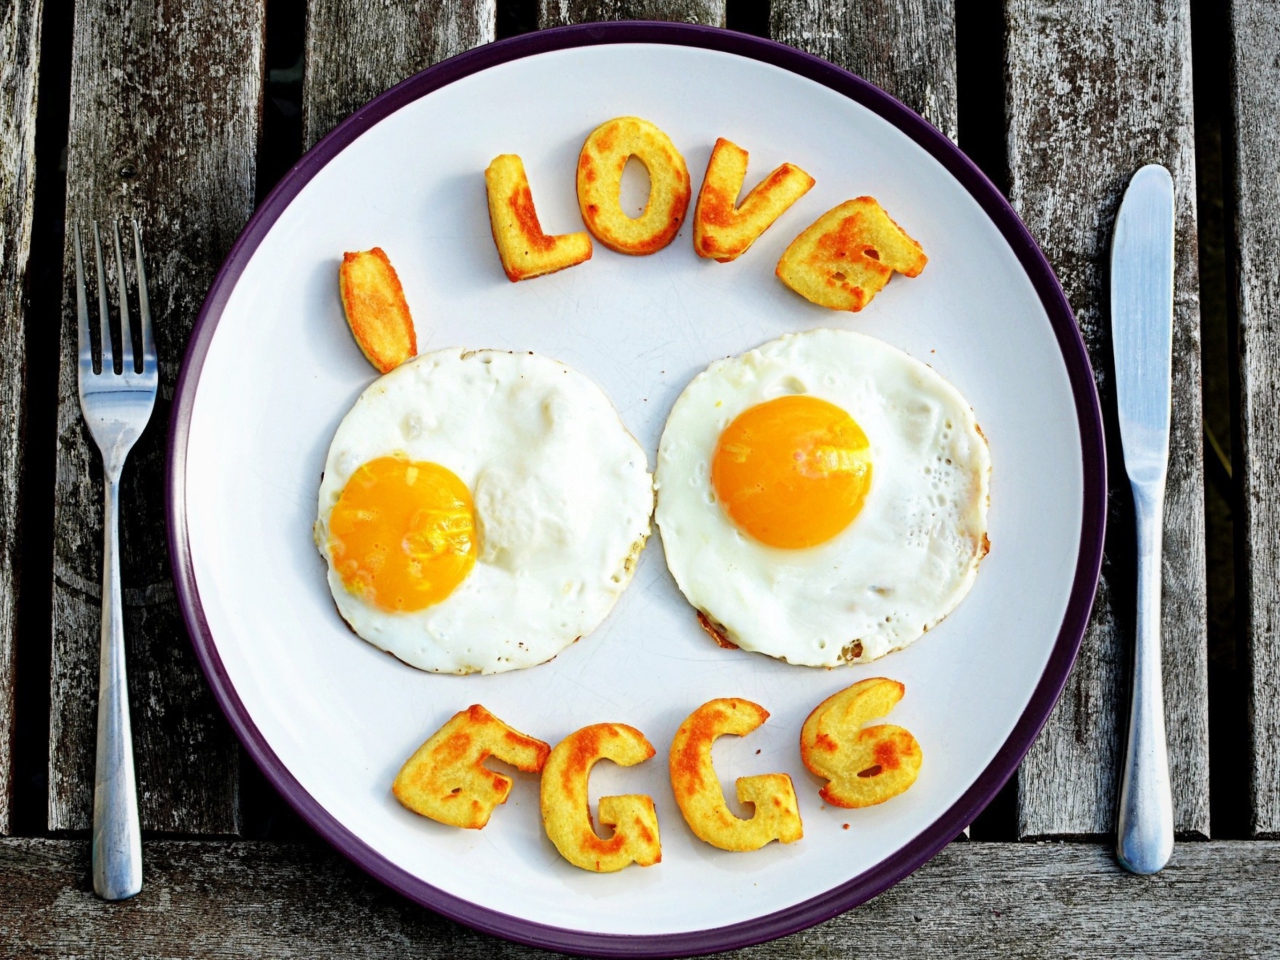 Sfondi I Love Eggs 1280x960